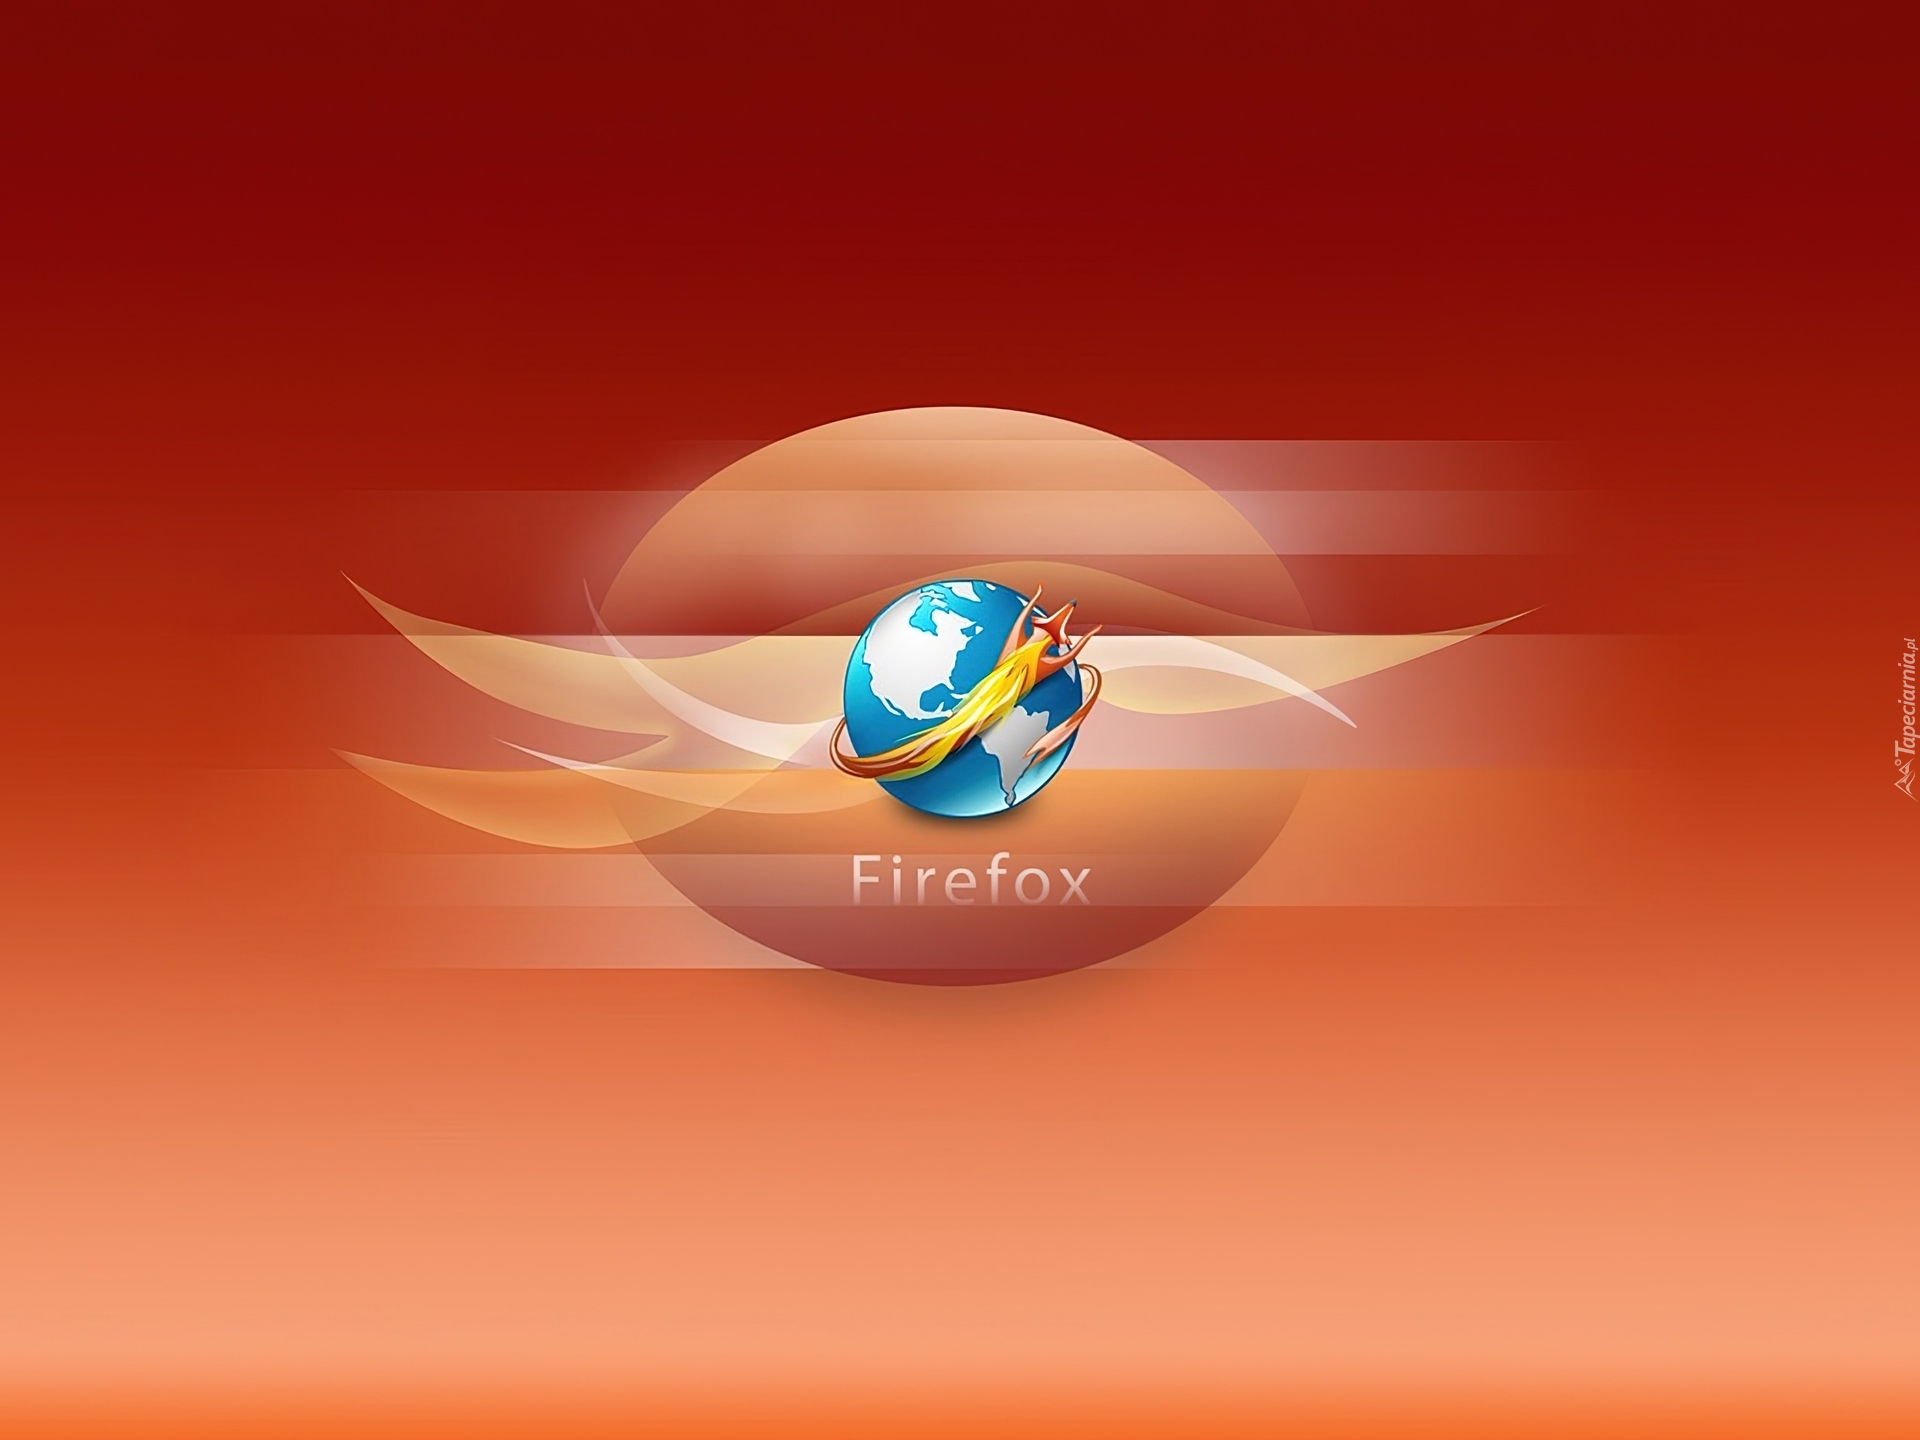 FireFox